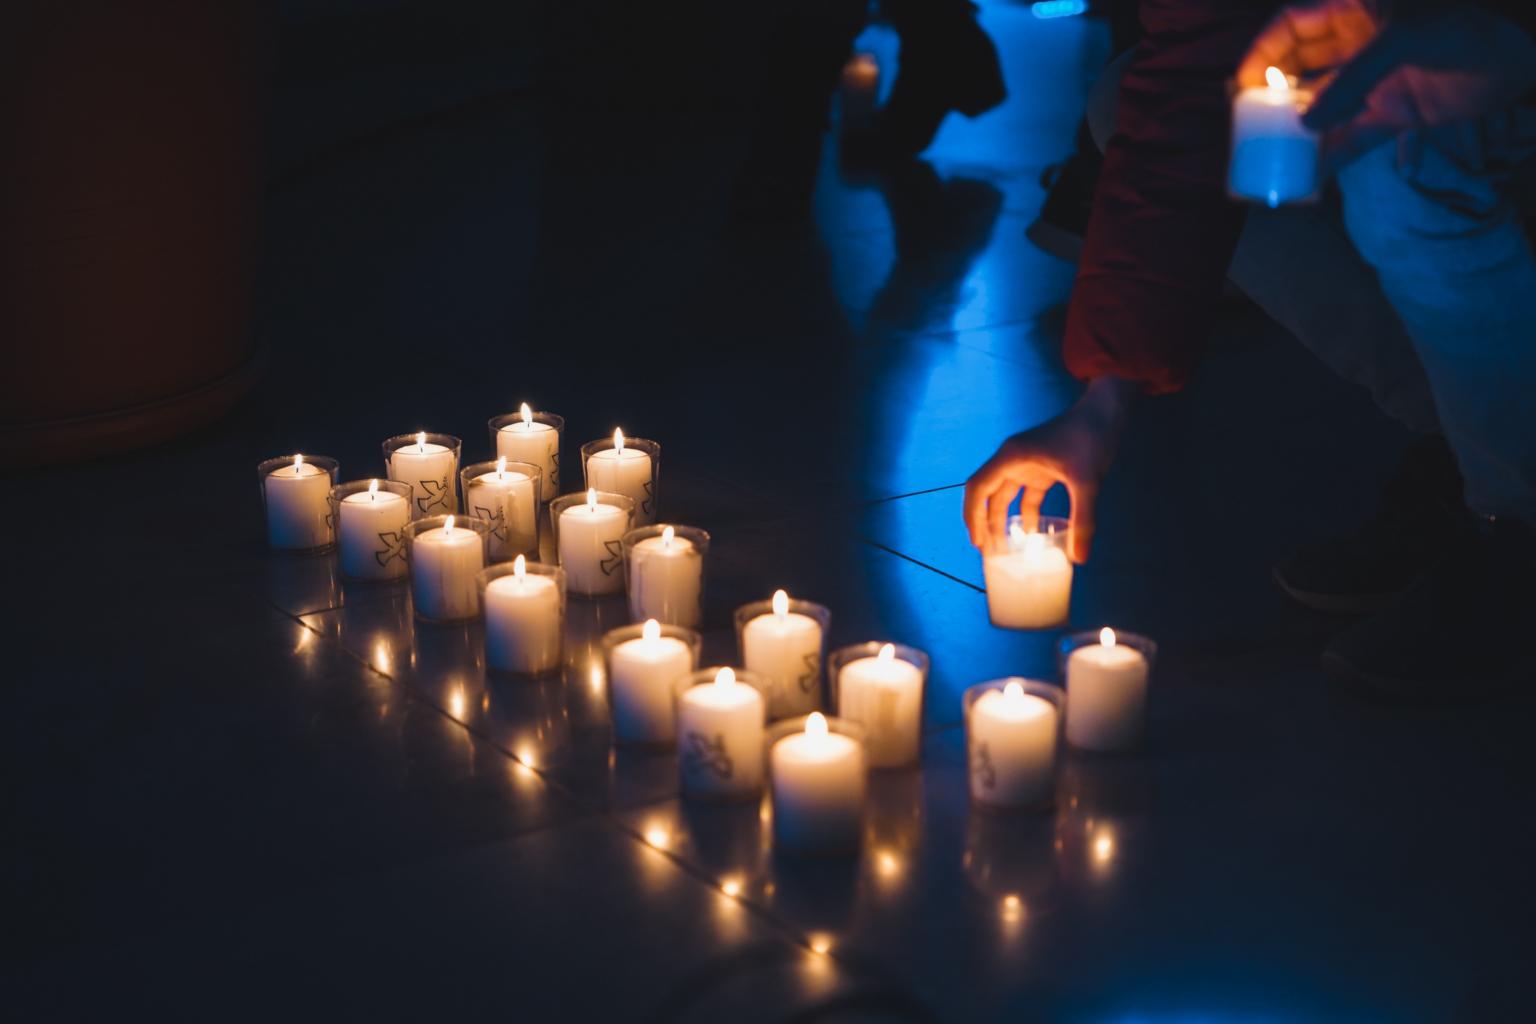 Kerzen zum Gedenken und für den Frieden (c) Sebastian Strauch / pixabay.com